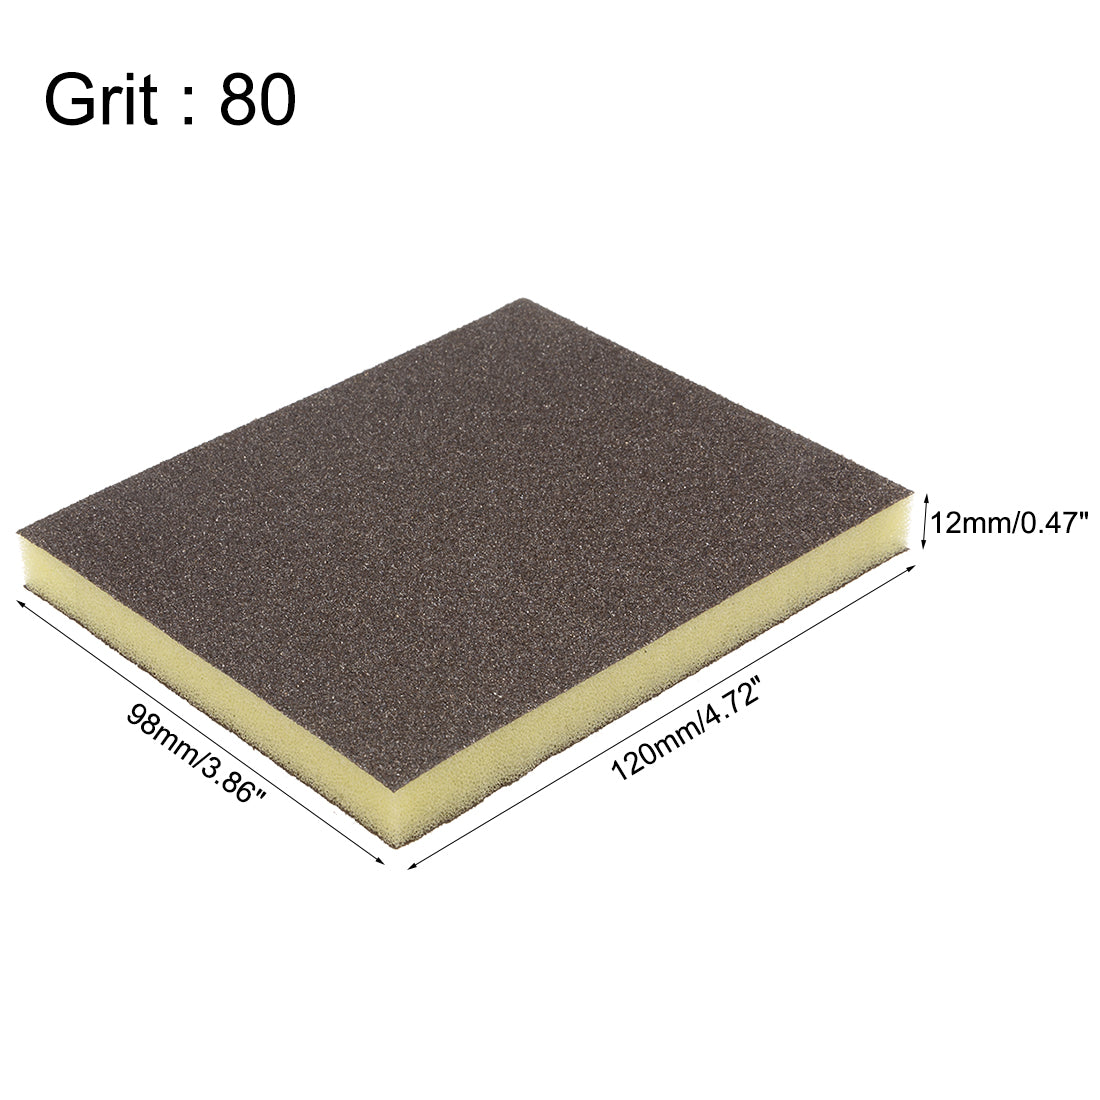 uxcell Uxcell Sanding Sponge, Coarse Grit 80 Grit Sanding Block Pad, 4.72" x 3.86" x 0.47" Size 12pcs